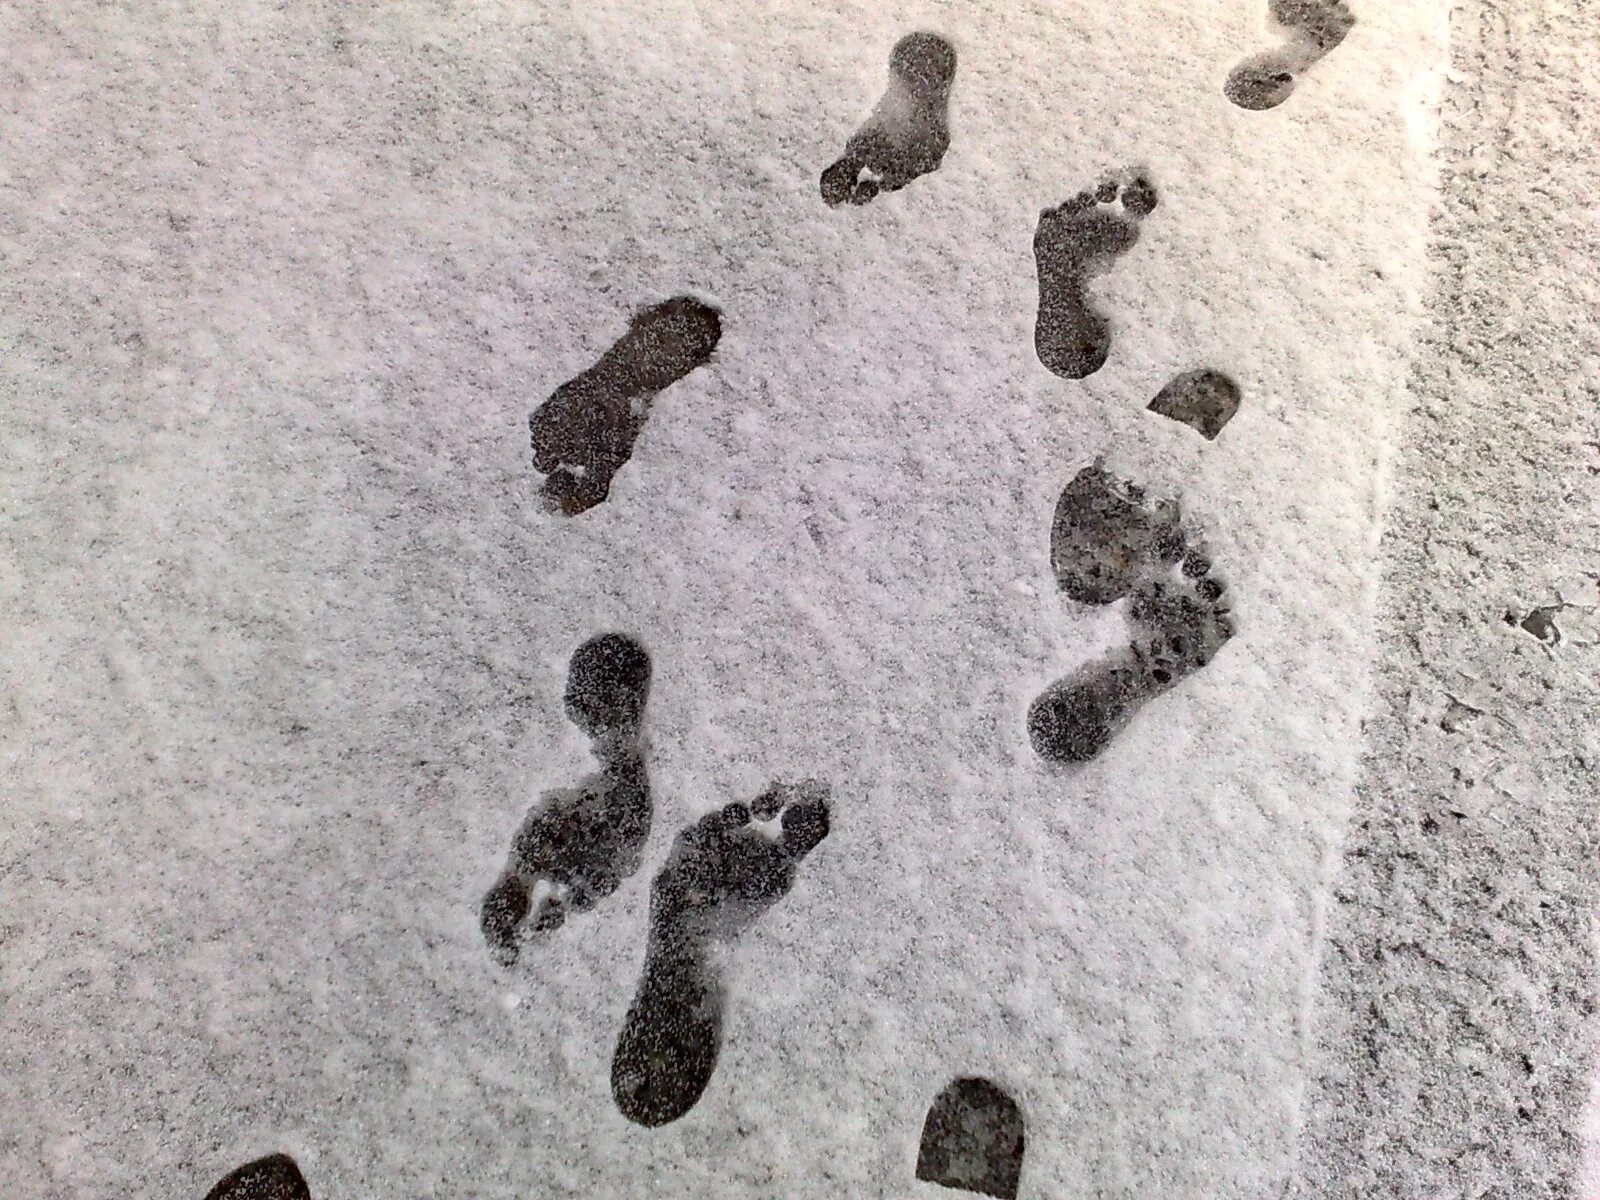 След нетленка. Следы человека на снегу. Следы босых ног. Отпечатки ног на снегу. След ноги человека на снегу.